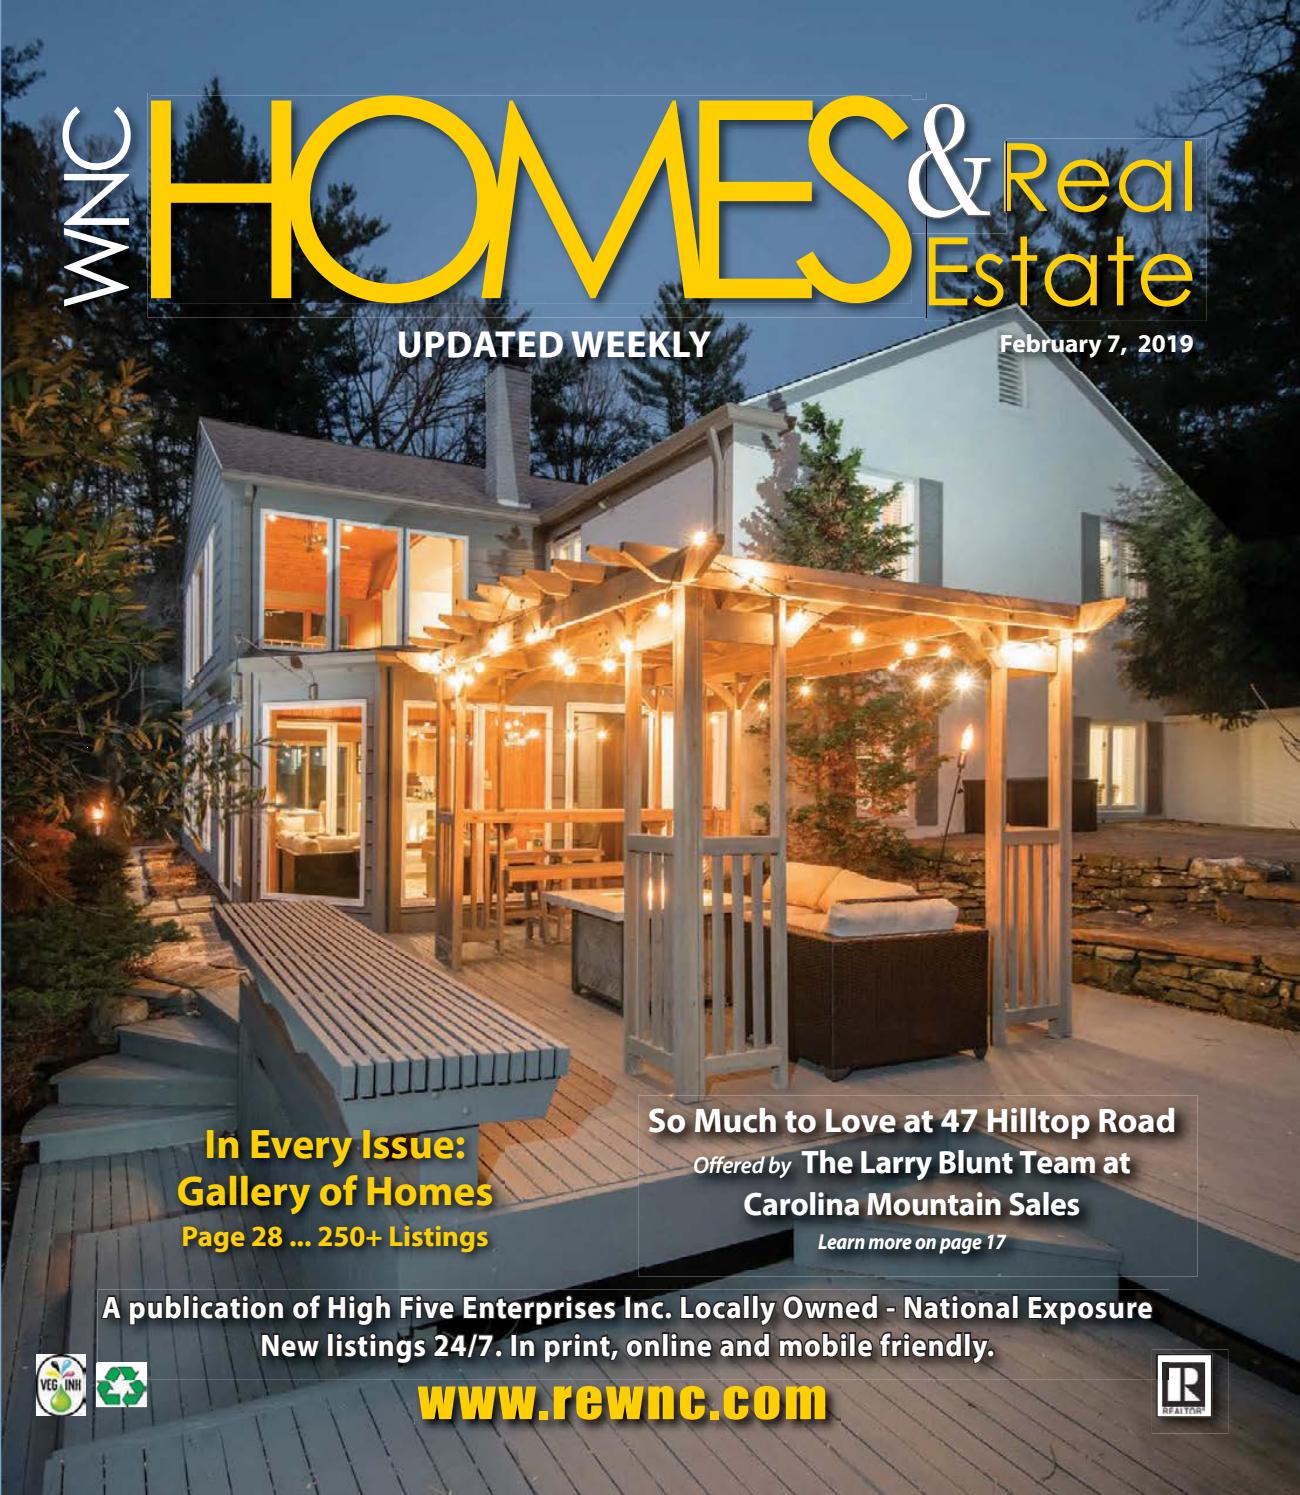 Herringbone Subway Tile Fresh Vol 30 February 2 by Wnc Homes & Real Estate issuu